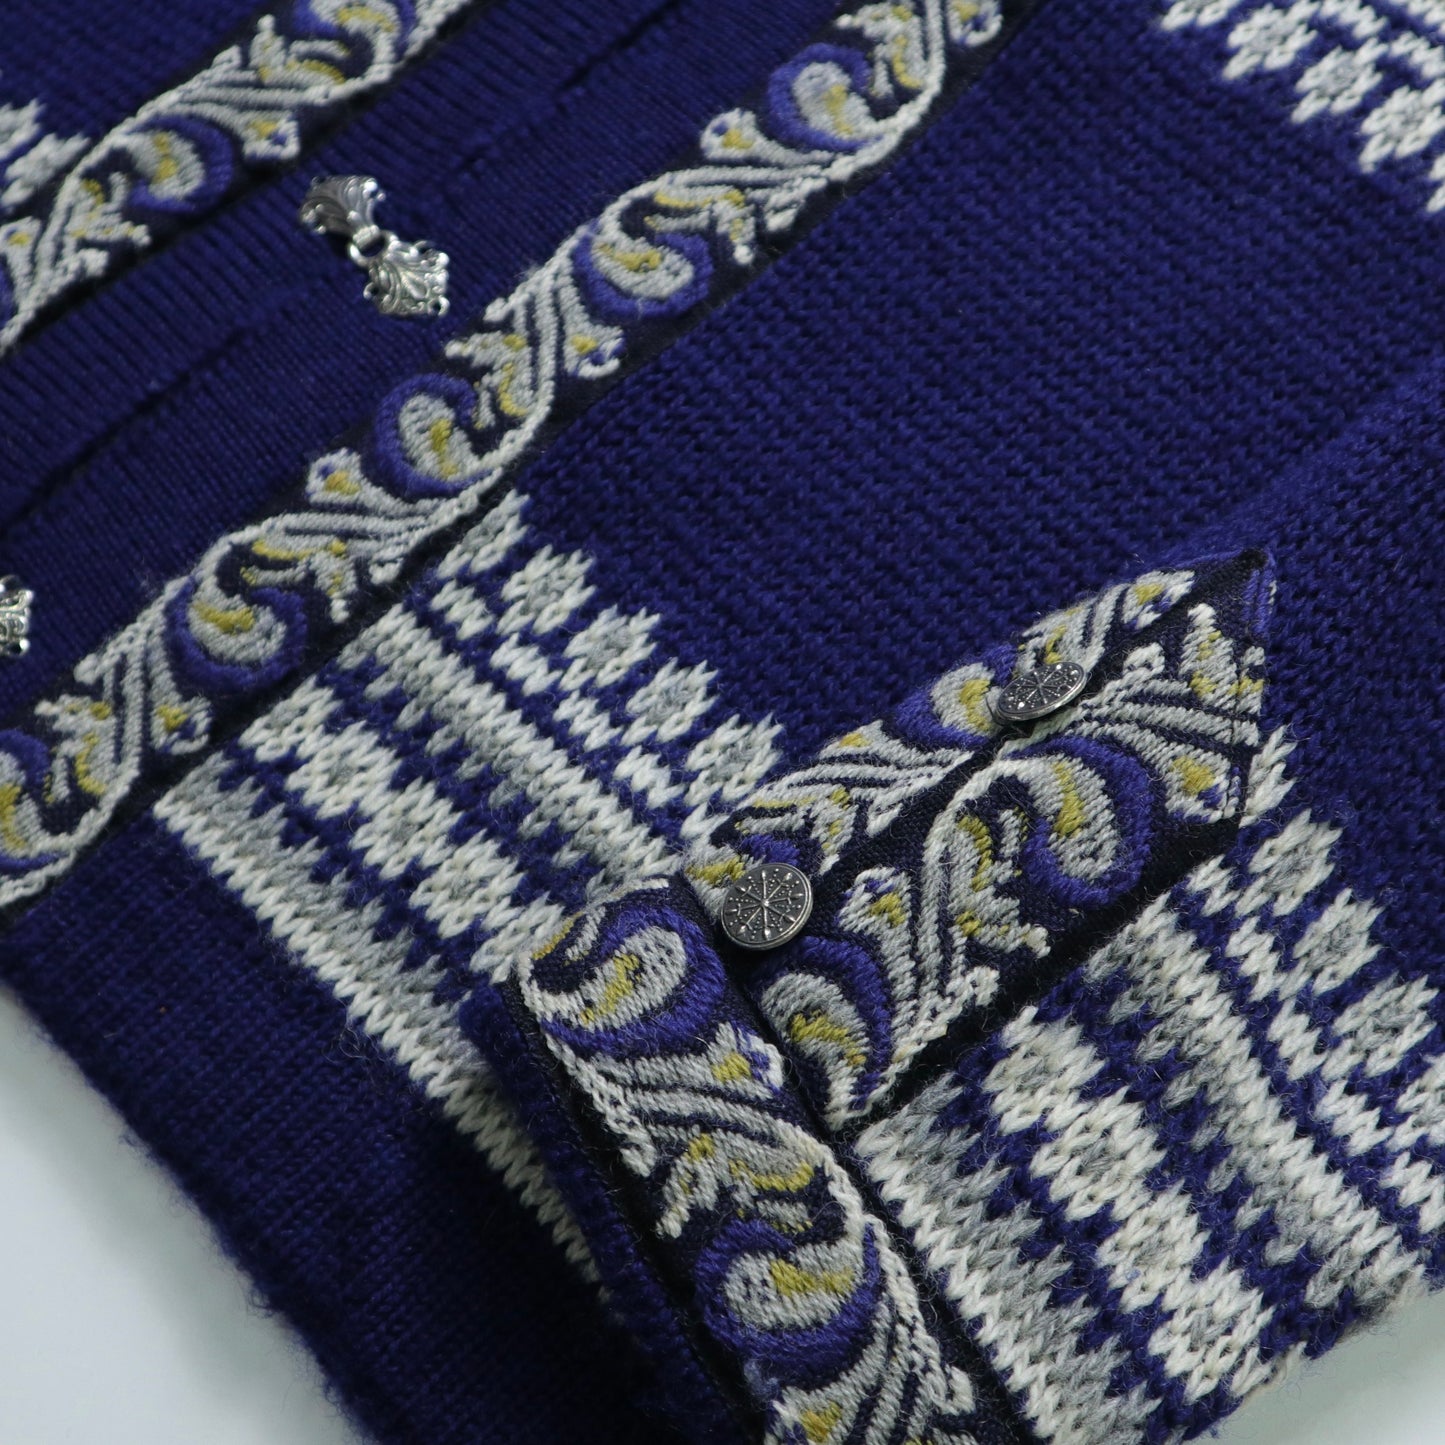 Nordstrikk Royal Blue Norwegian Wool Clothing Carved Metal Buckle Made in Norway